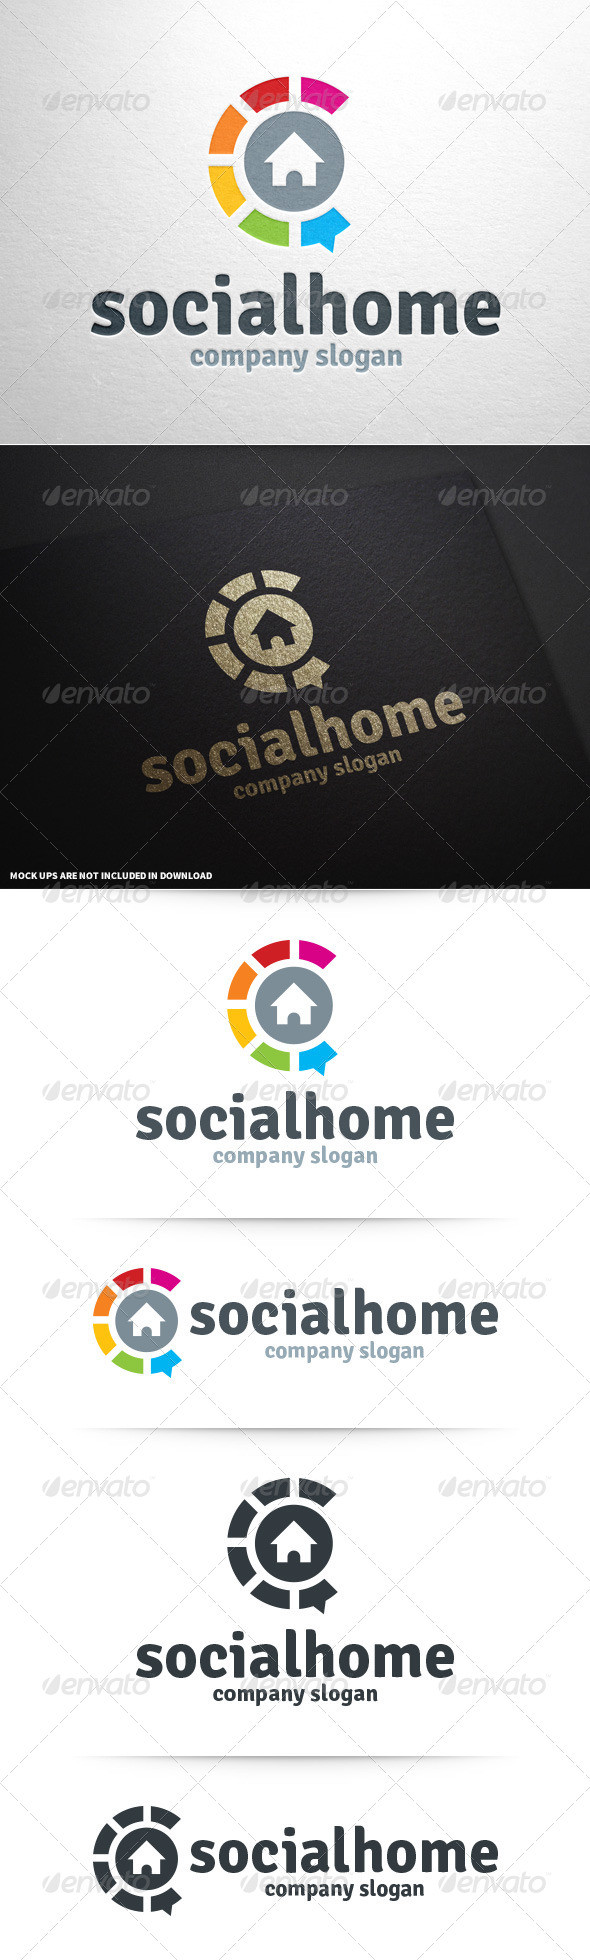 Social home logo